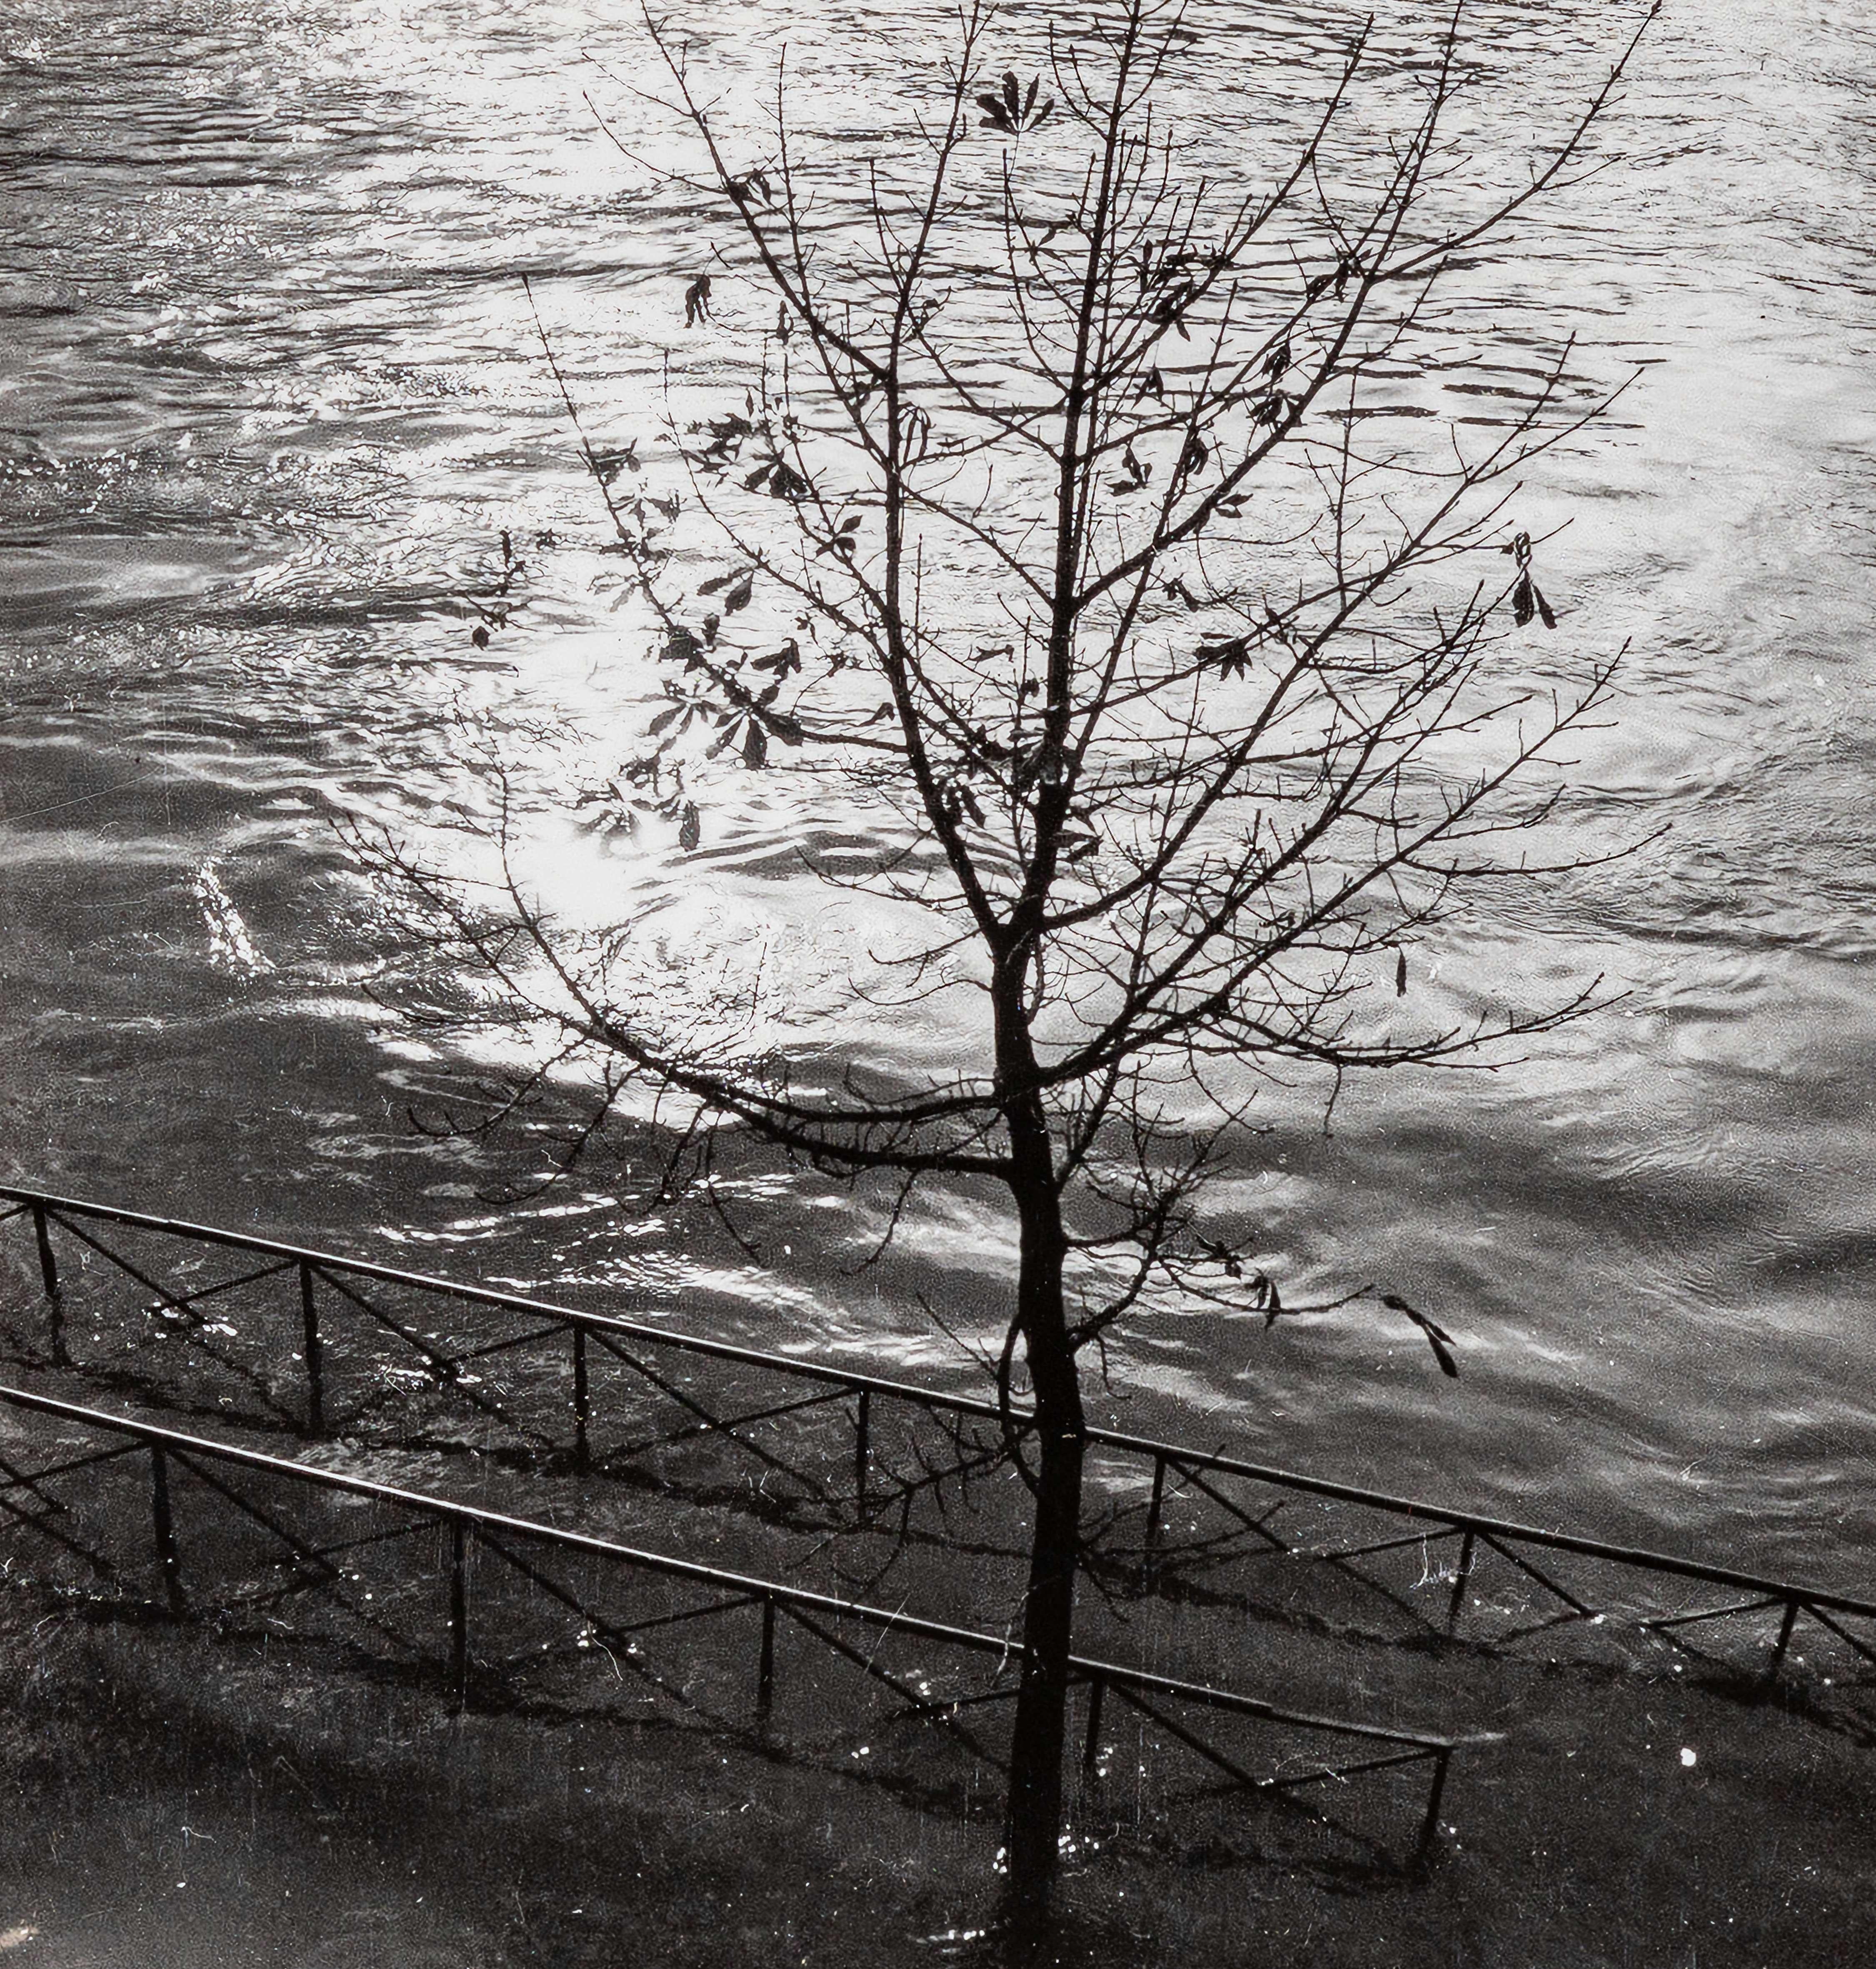 Dora Maar Black and White Photograph - Study of Light on Water, (Études de Lumière sur l'Eau) II